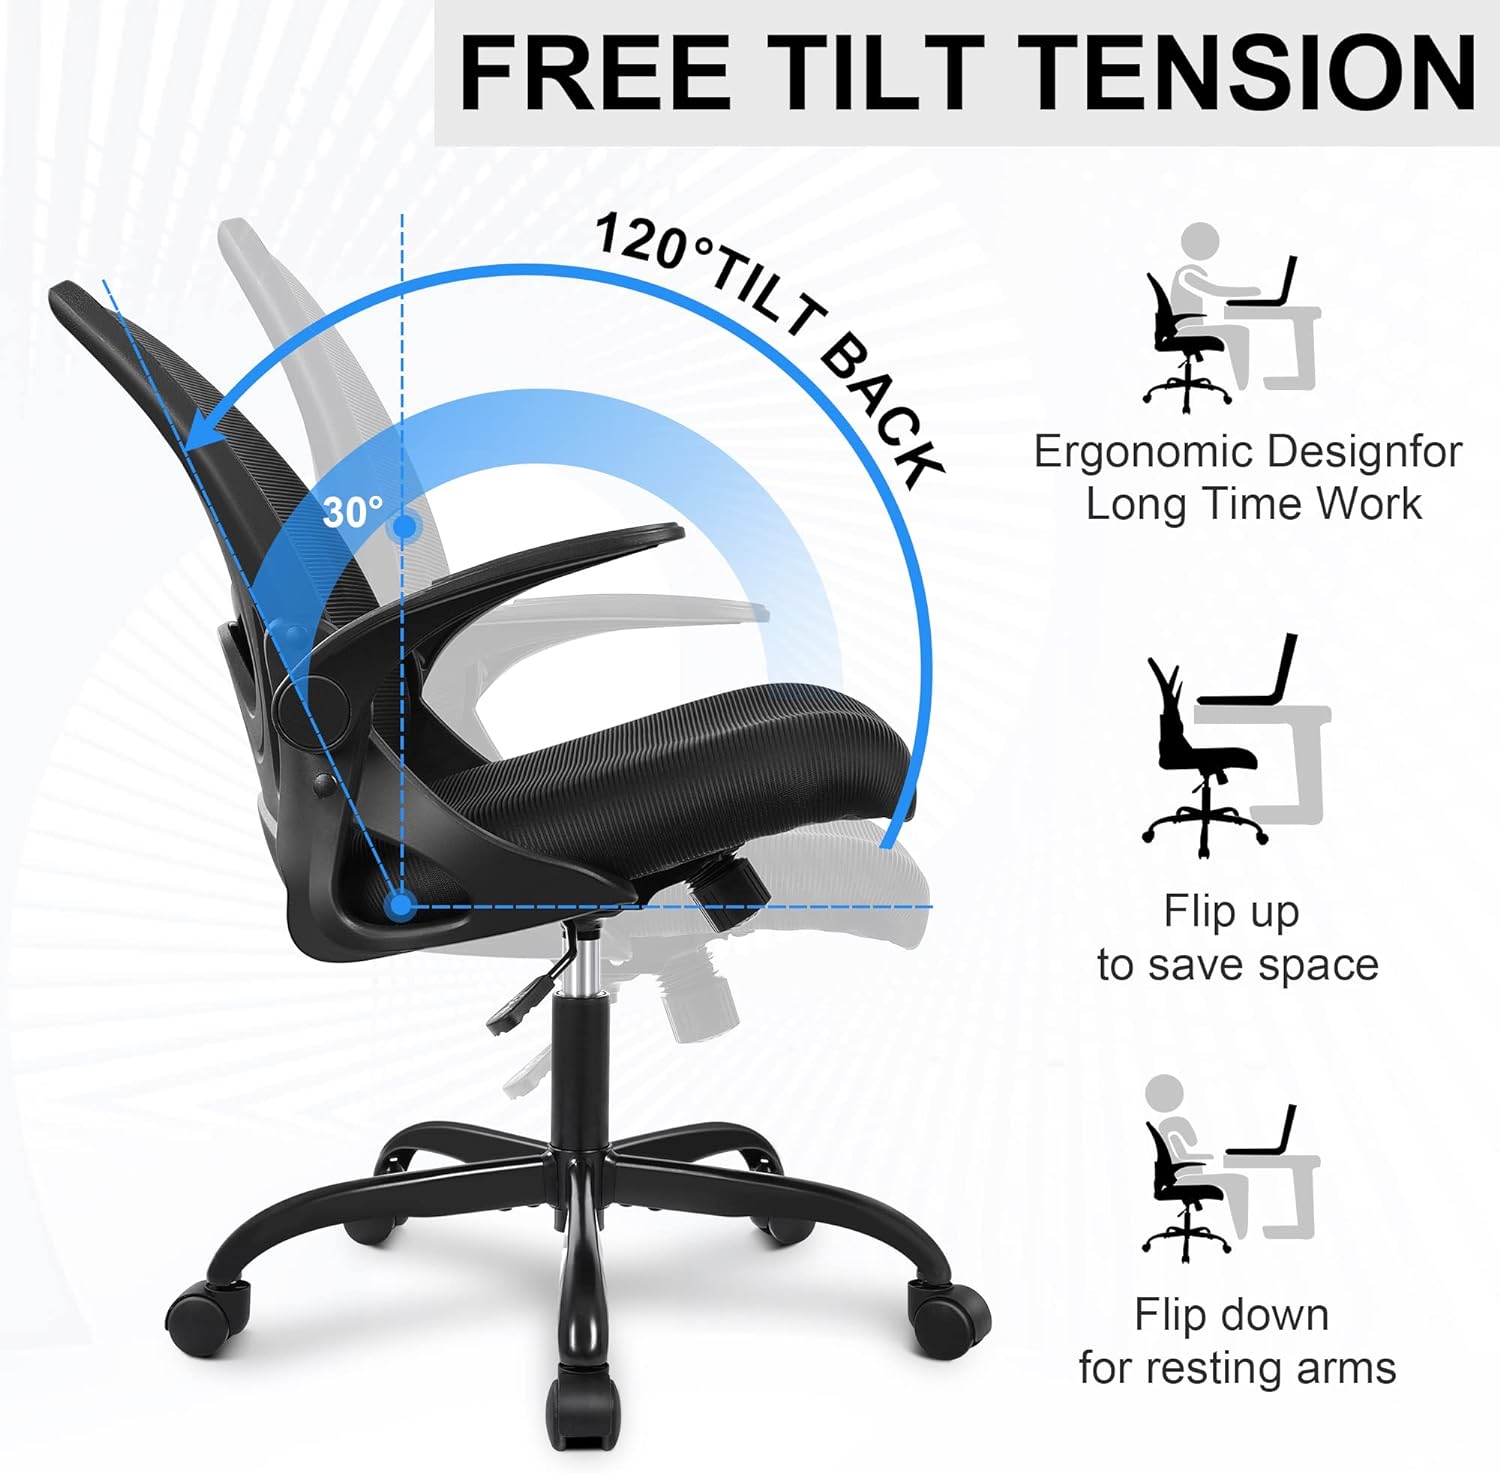 Silla ergonómica – Una silla de escritorio versátil con soporte lumbar  ajustable, respaldo de malla transpirable y ruedas lisas – Experimenta una